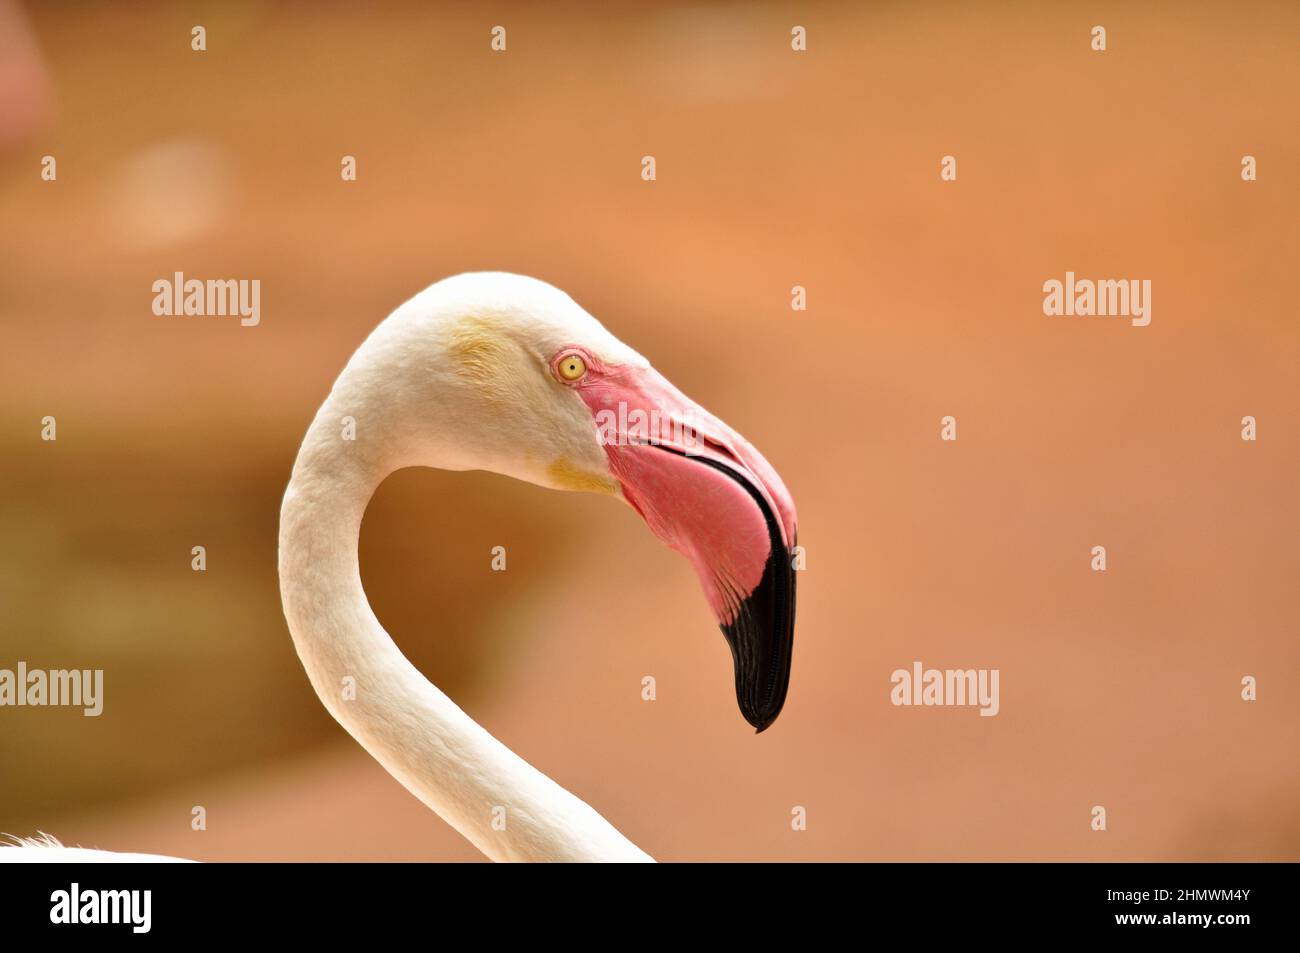 Chilenischer Flamingo (Phoenicopterus chilensis) Nahaufnahme des Headshot mit Blick auf die Kamera. Aufgenommen im Parque das Aves, Brasilien. Stockfoto